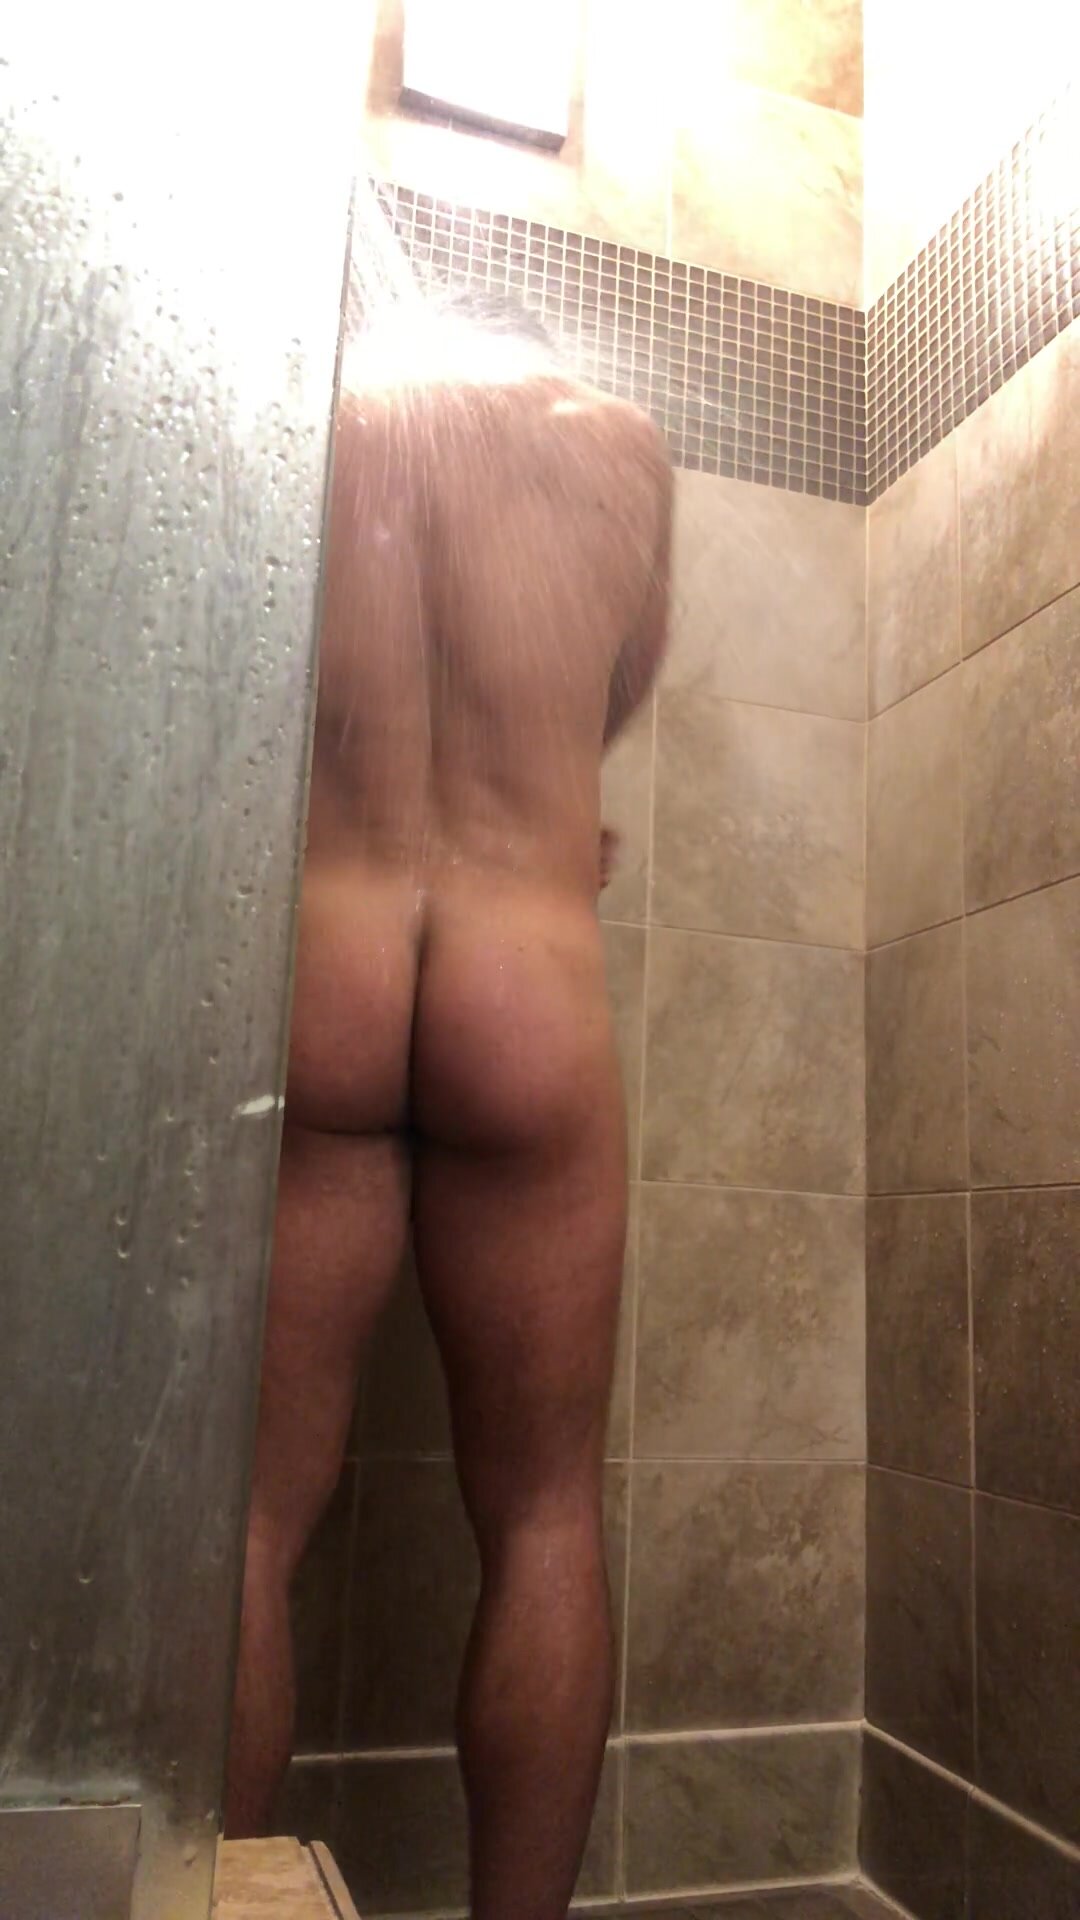 Beefy jock flexes in shower with boner